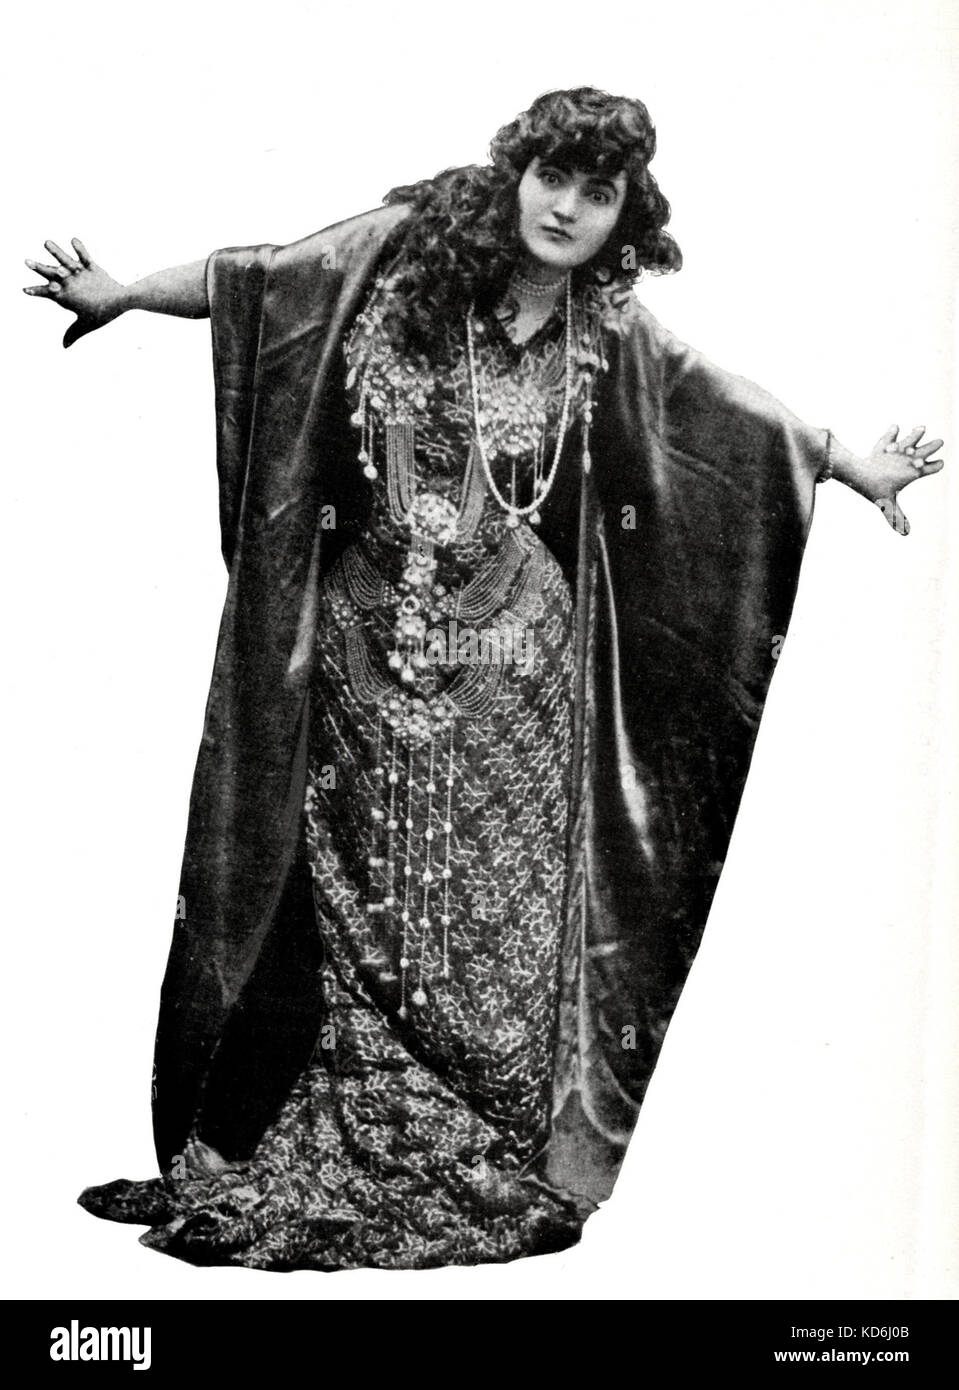 Emma Calvé in der Titelrolle von Massenets Oper Salomé, französische Sopranistin, 1858-1942. c. 1920. Stockfoto